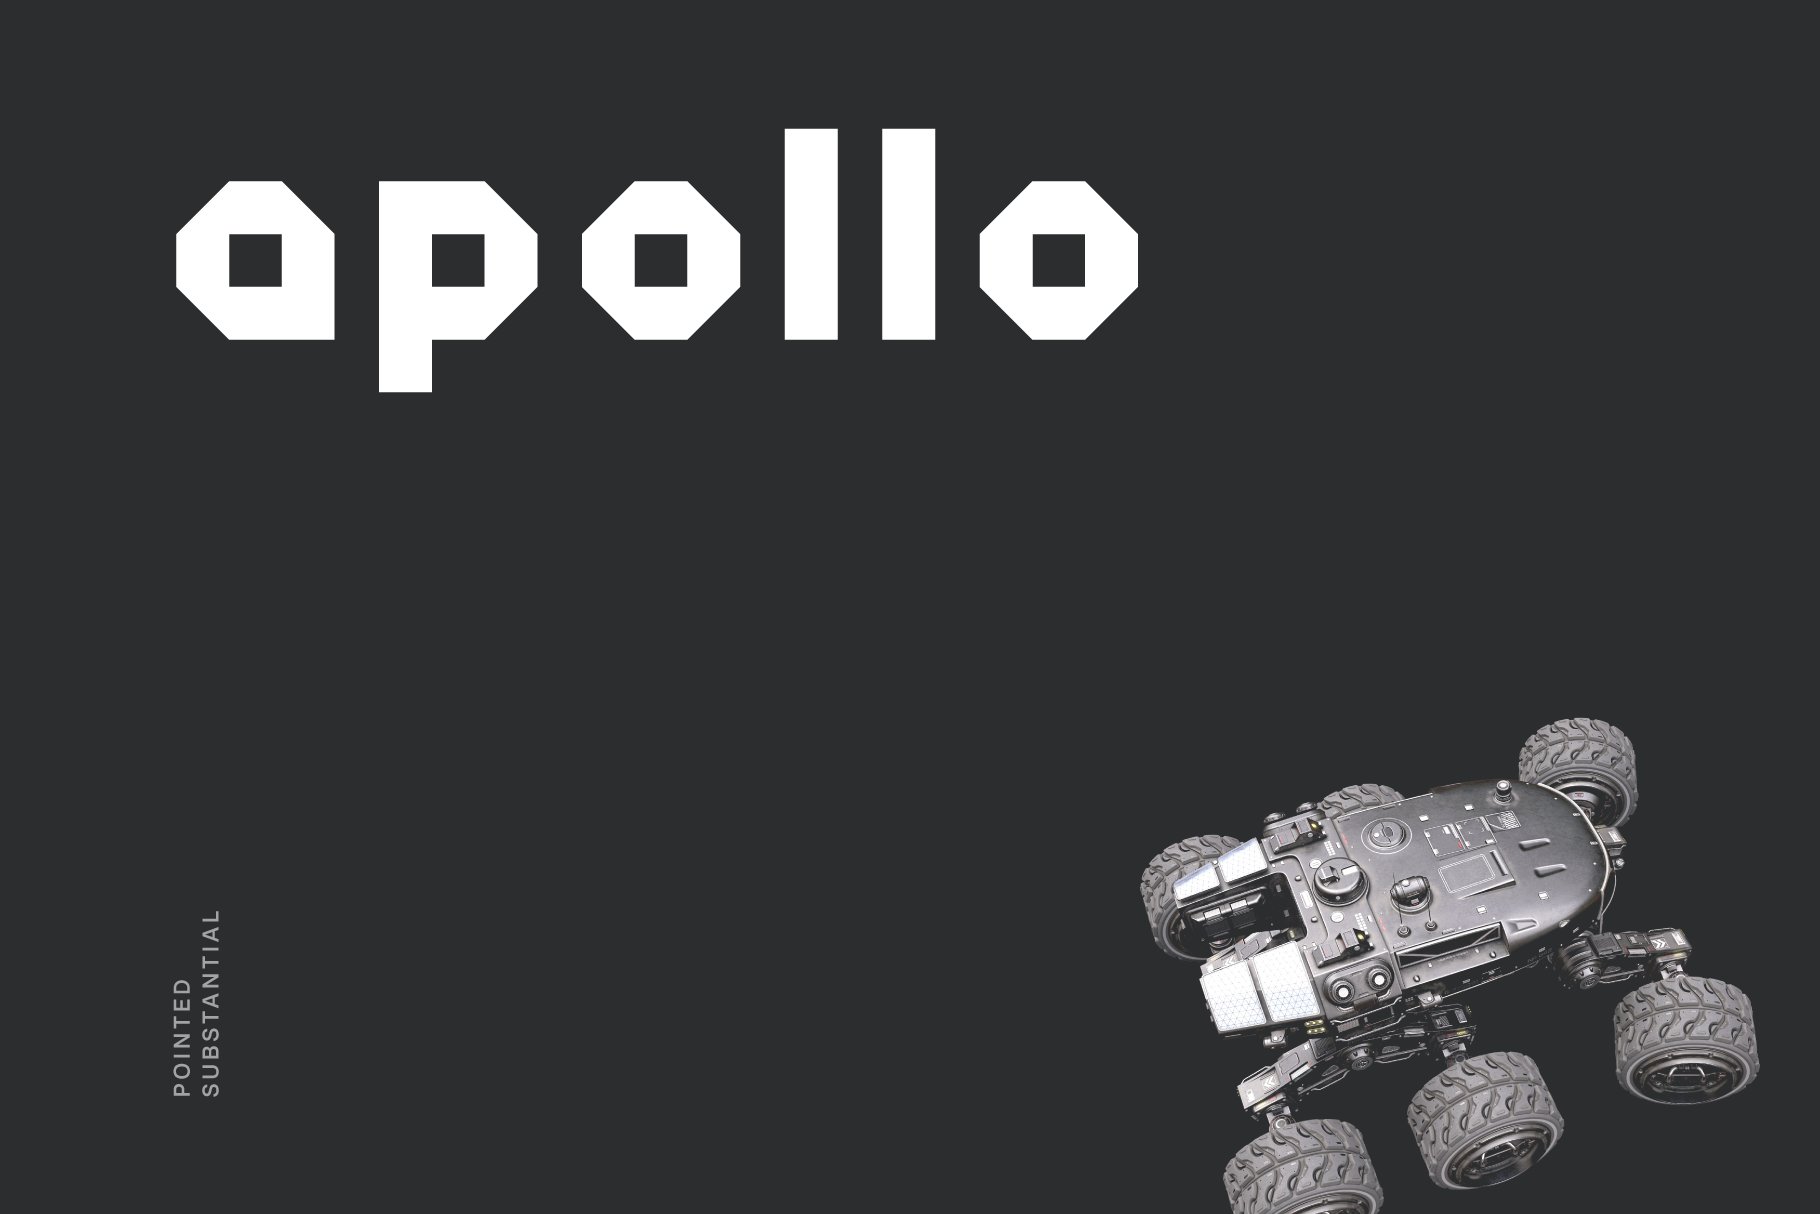 Apollo Futuristic Tech Font cover image.